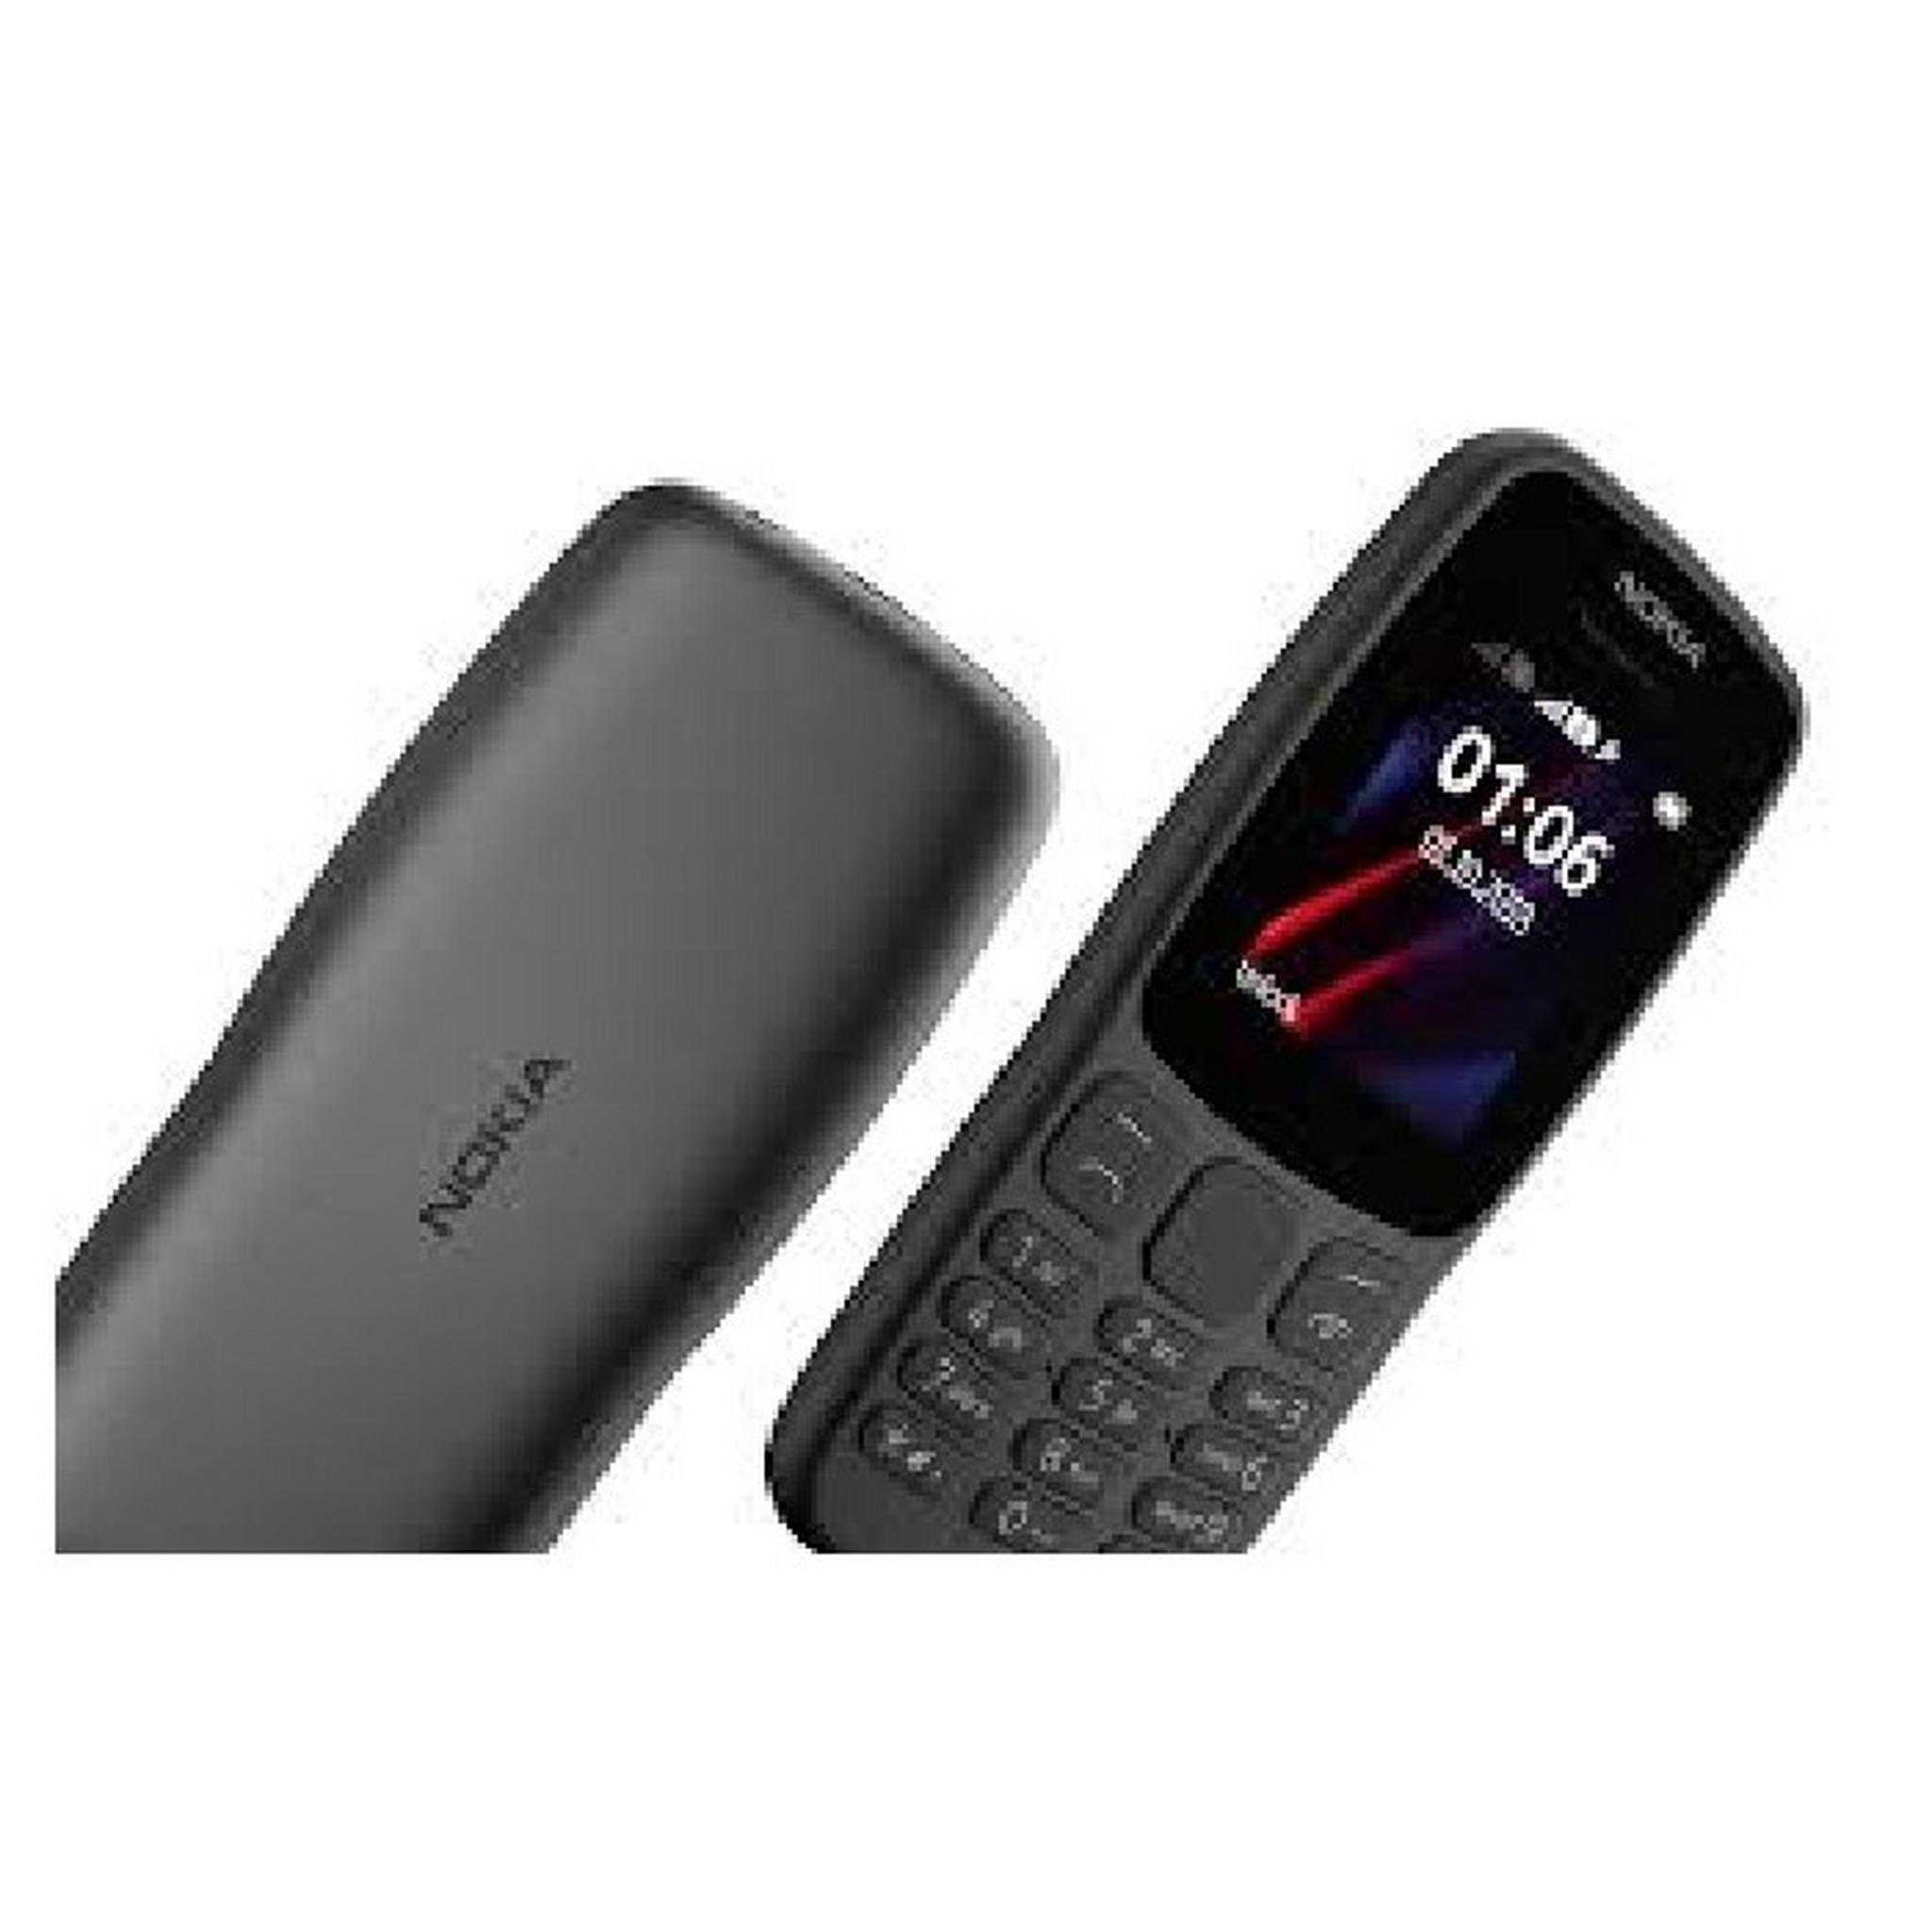 Nokia 106 4MB Phone - Grey